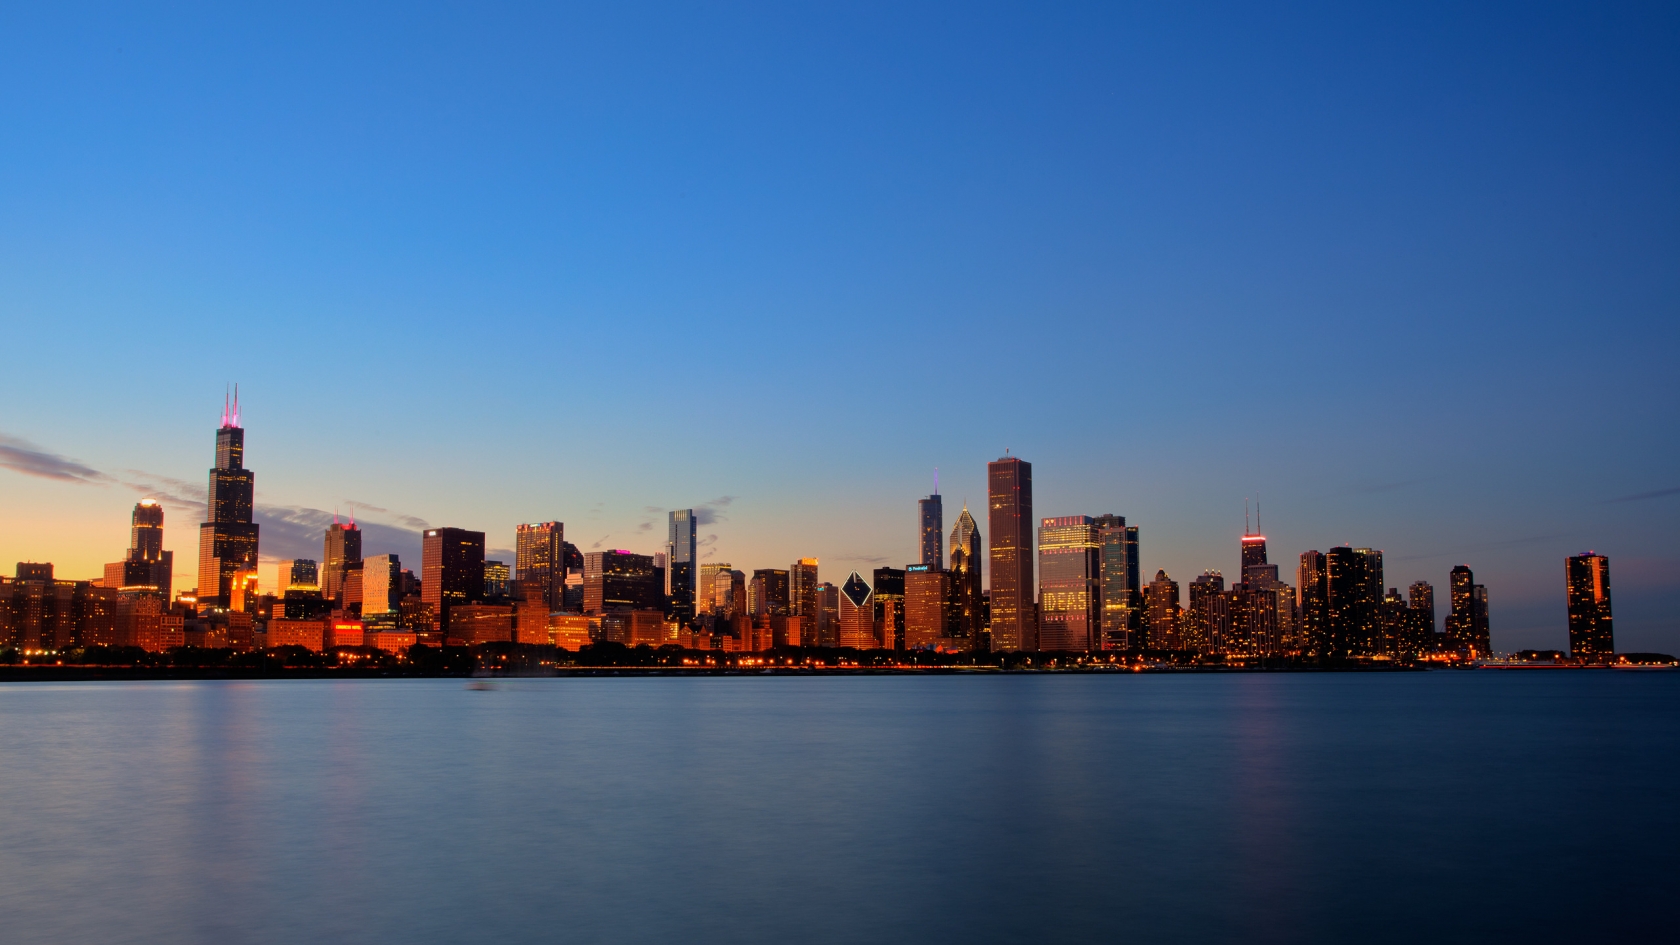 Chicago Skyline for 1680 x 945 HDTV resolution